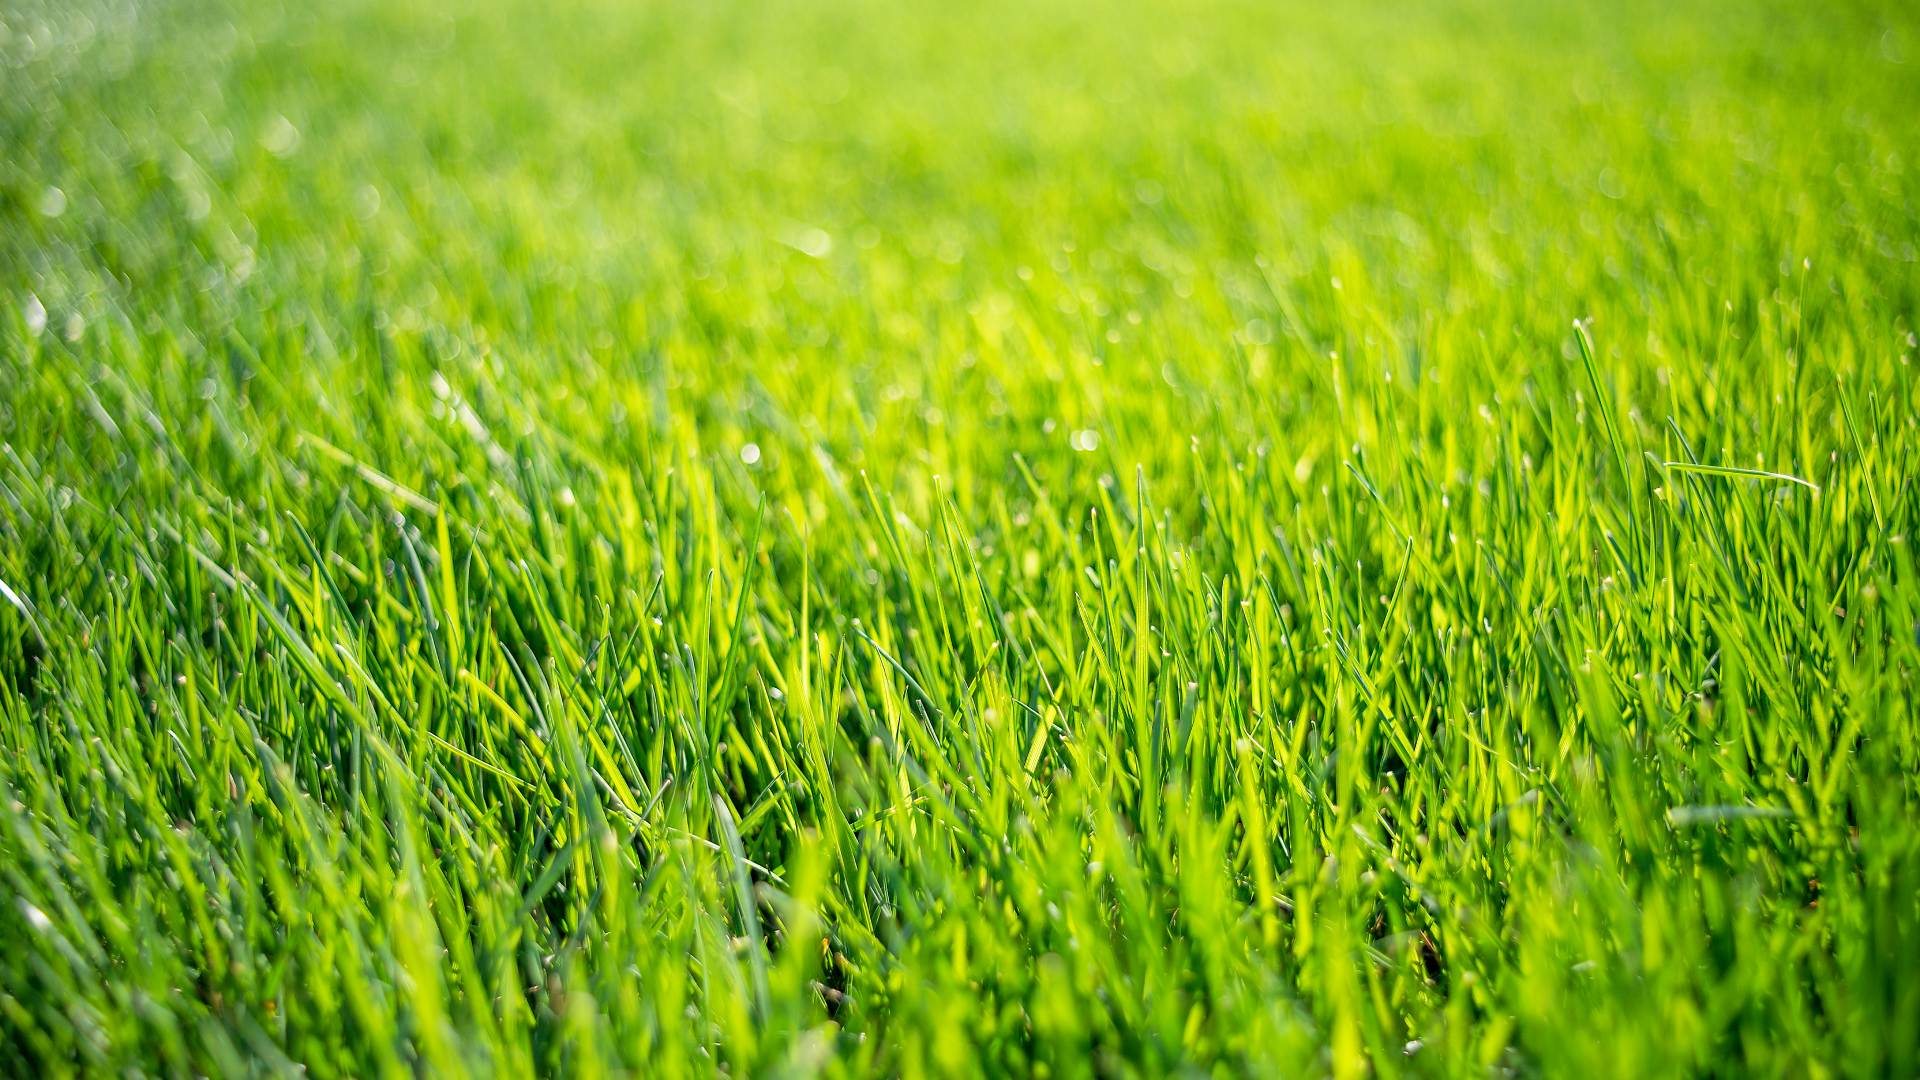 Field of vibrant green grass blades in Prairie Village, KS.